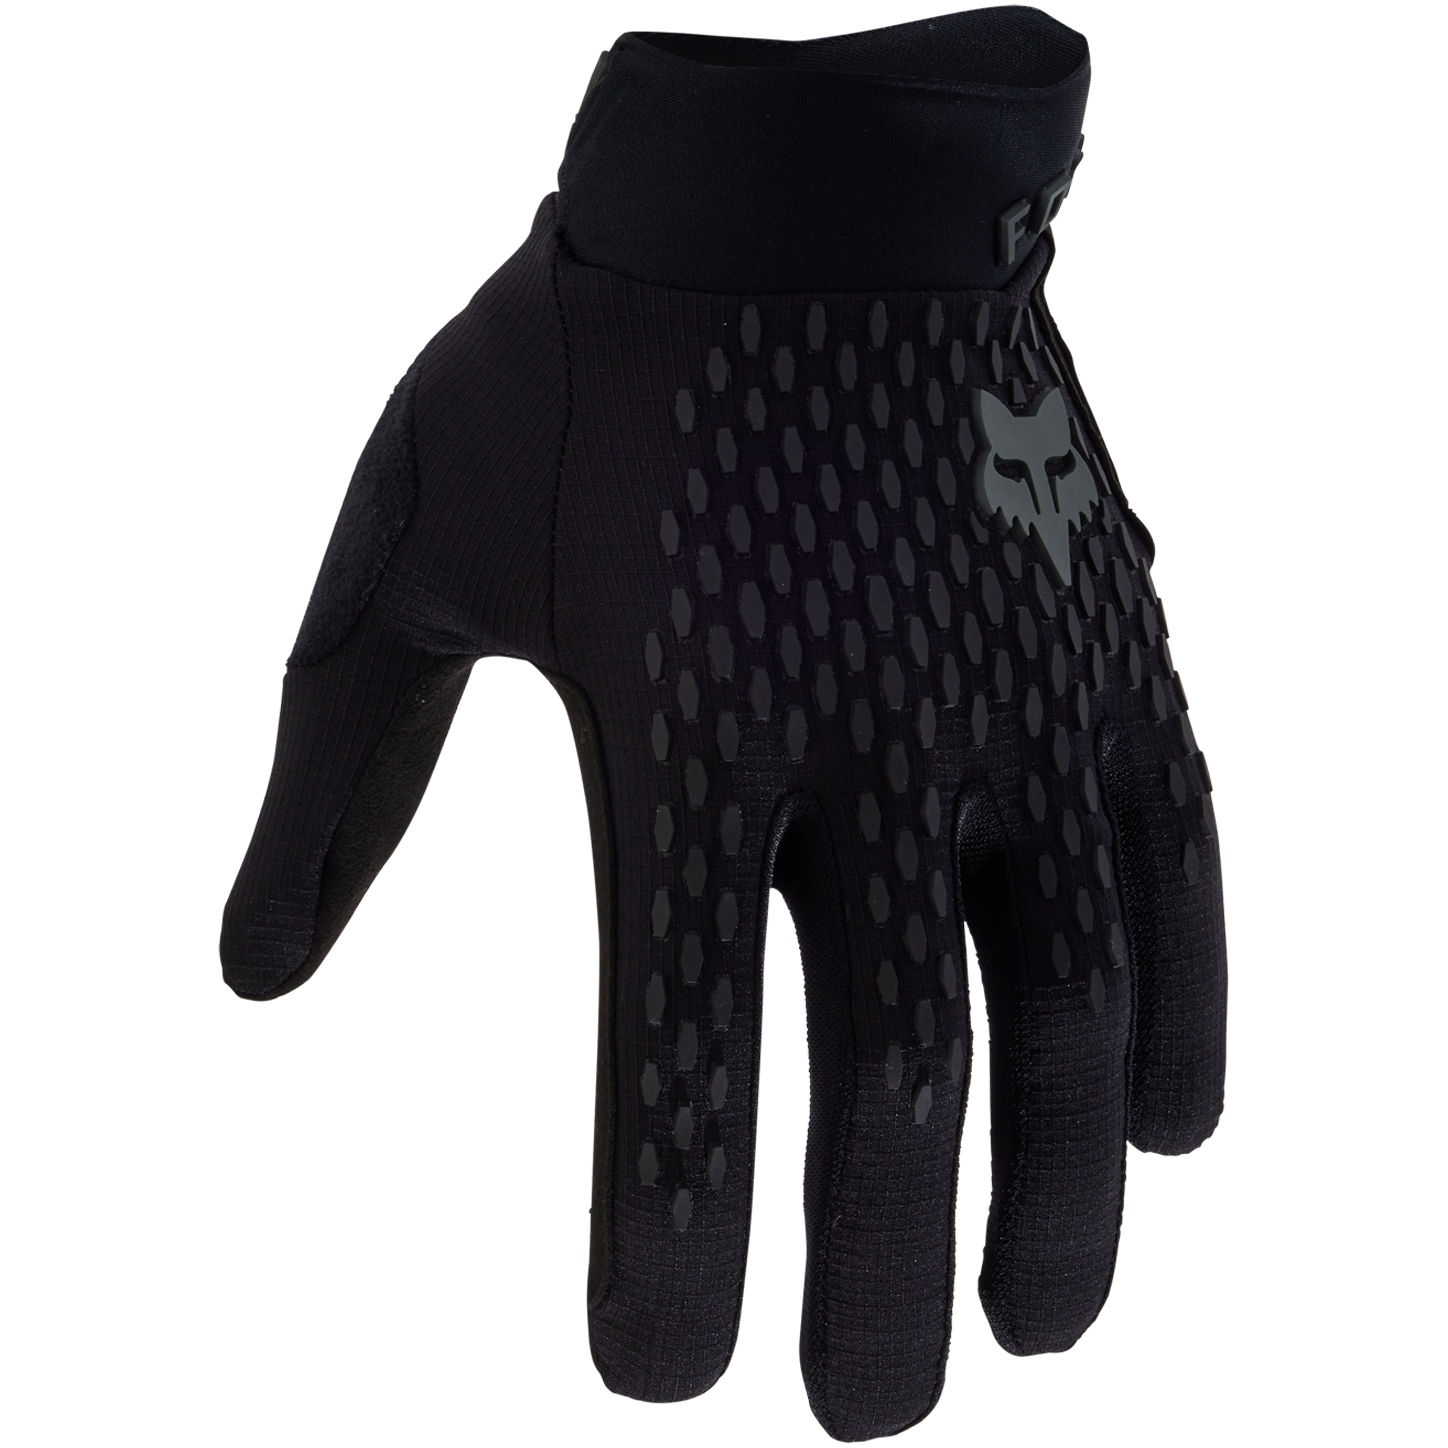 Productfoto van FOX Defend MTB Handschoenen Heren - zwart